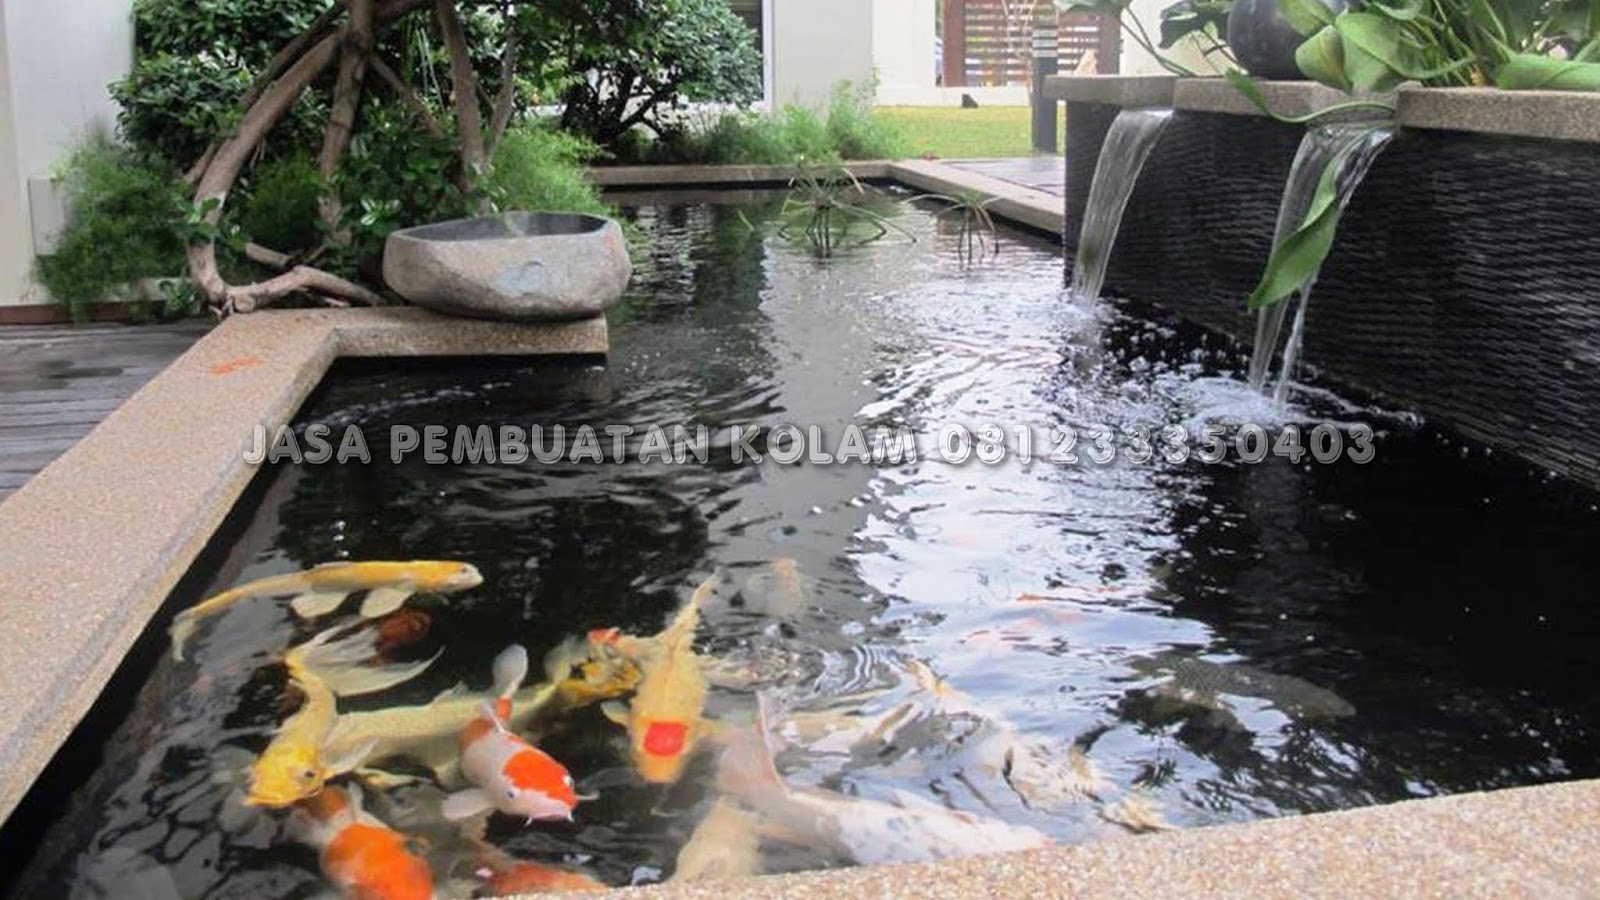 Jasa Pembuatan Kolam Ikan Koi Minimalis Tangerang KASKUS